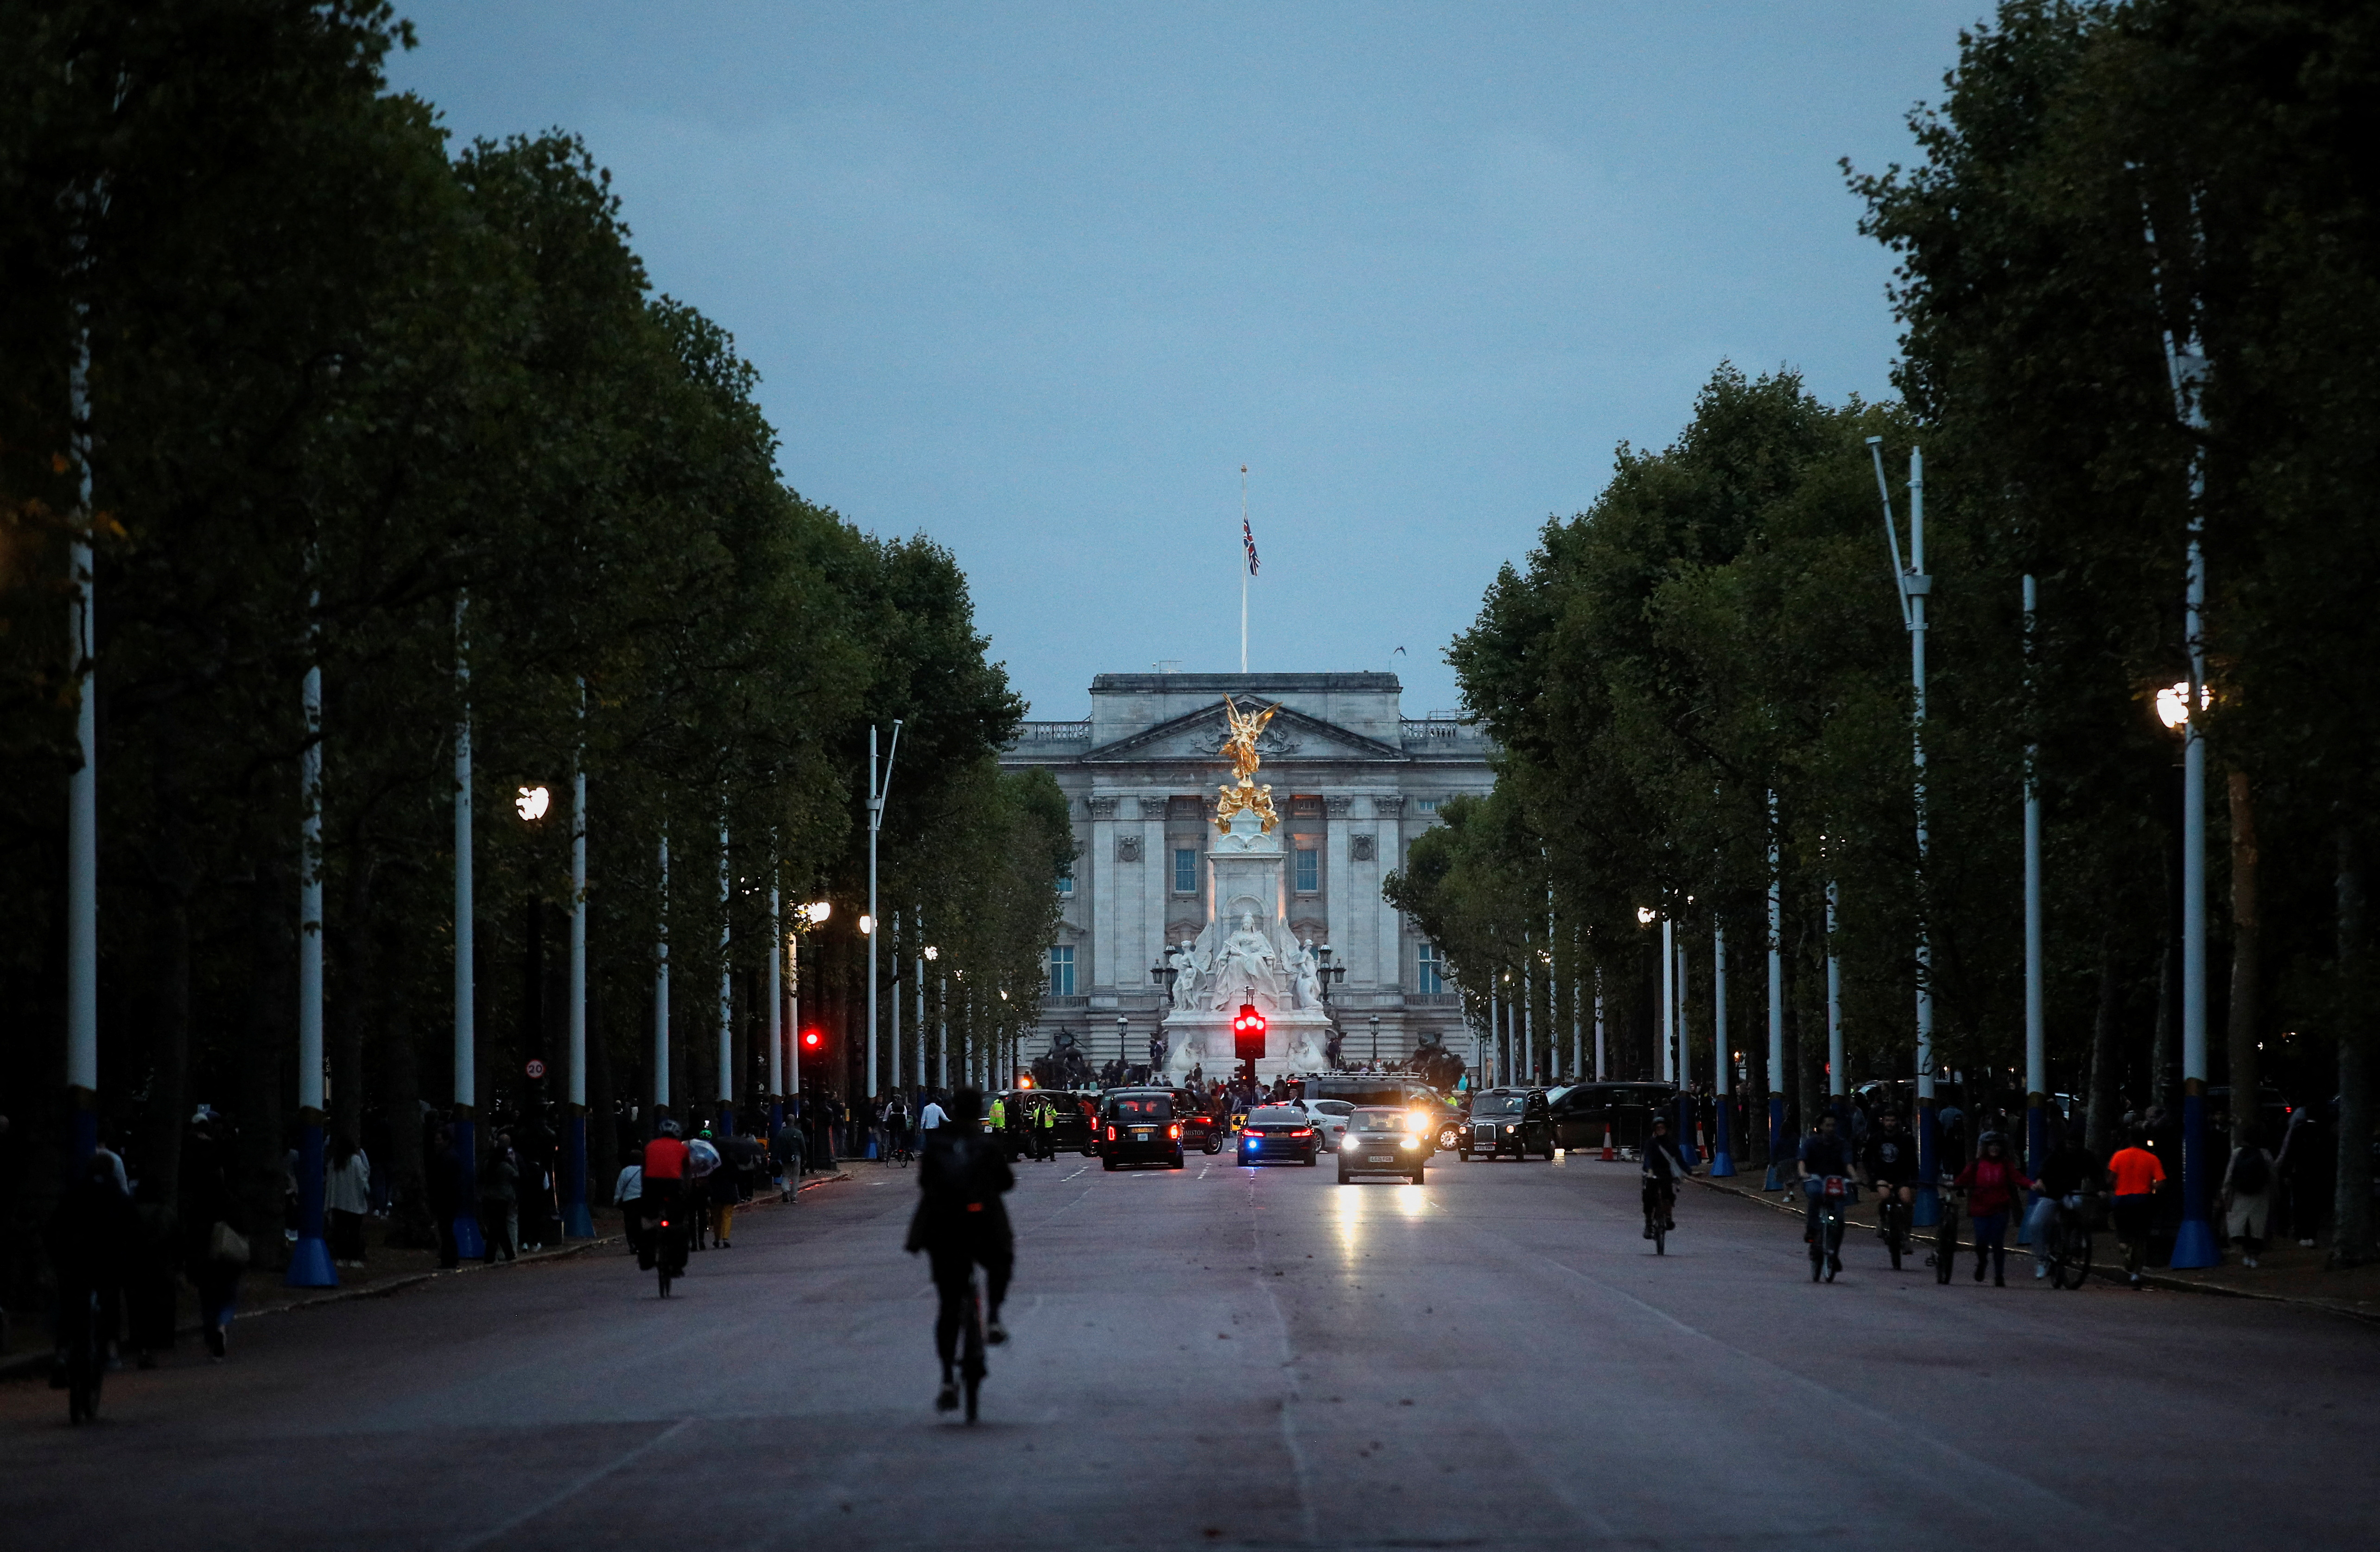 Multitudes llorosas afuera del Palacio de Buckingham cantaron un triste "God Save the Queen" cuando se supo la noticia de la muerte de Isabel II el jueves (REUTERS/Peter Nicholls)